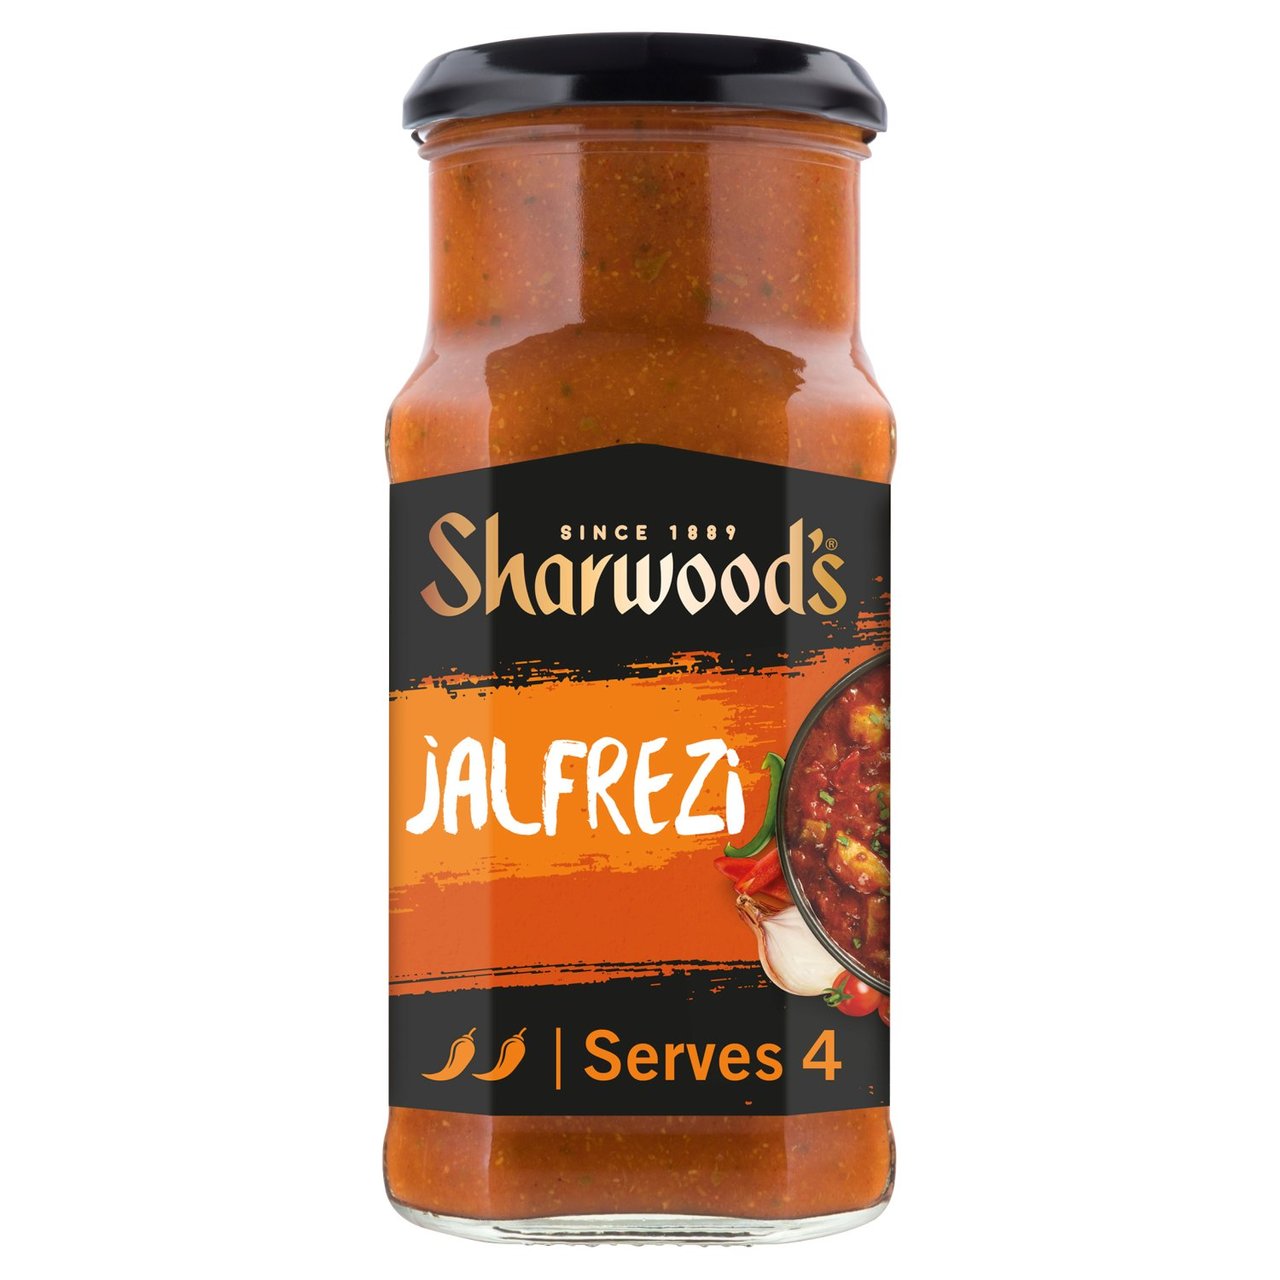 Sharwoods Jalfrezi